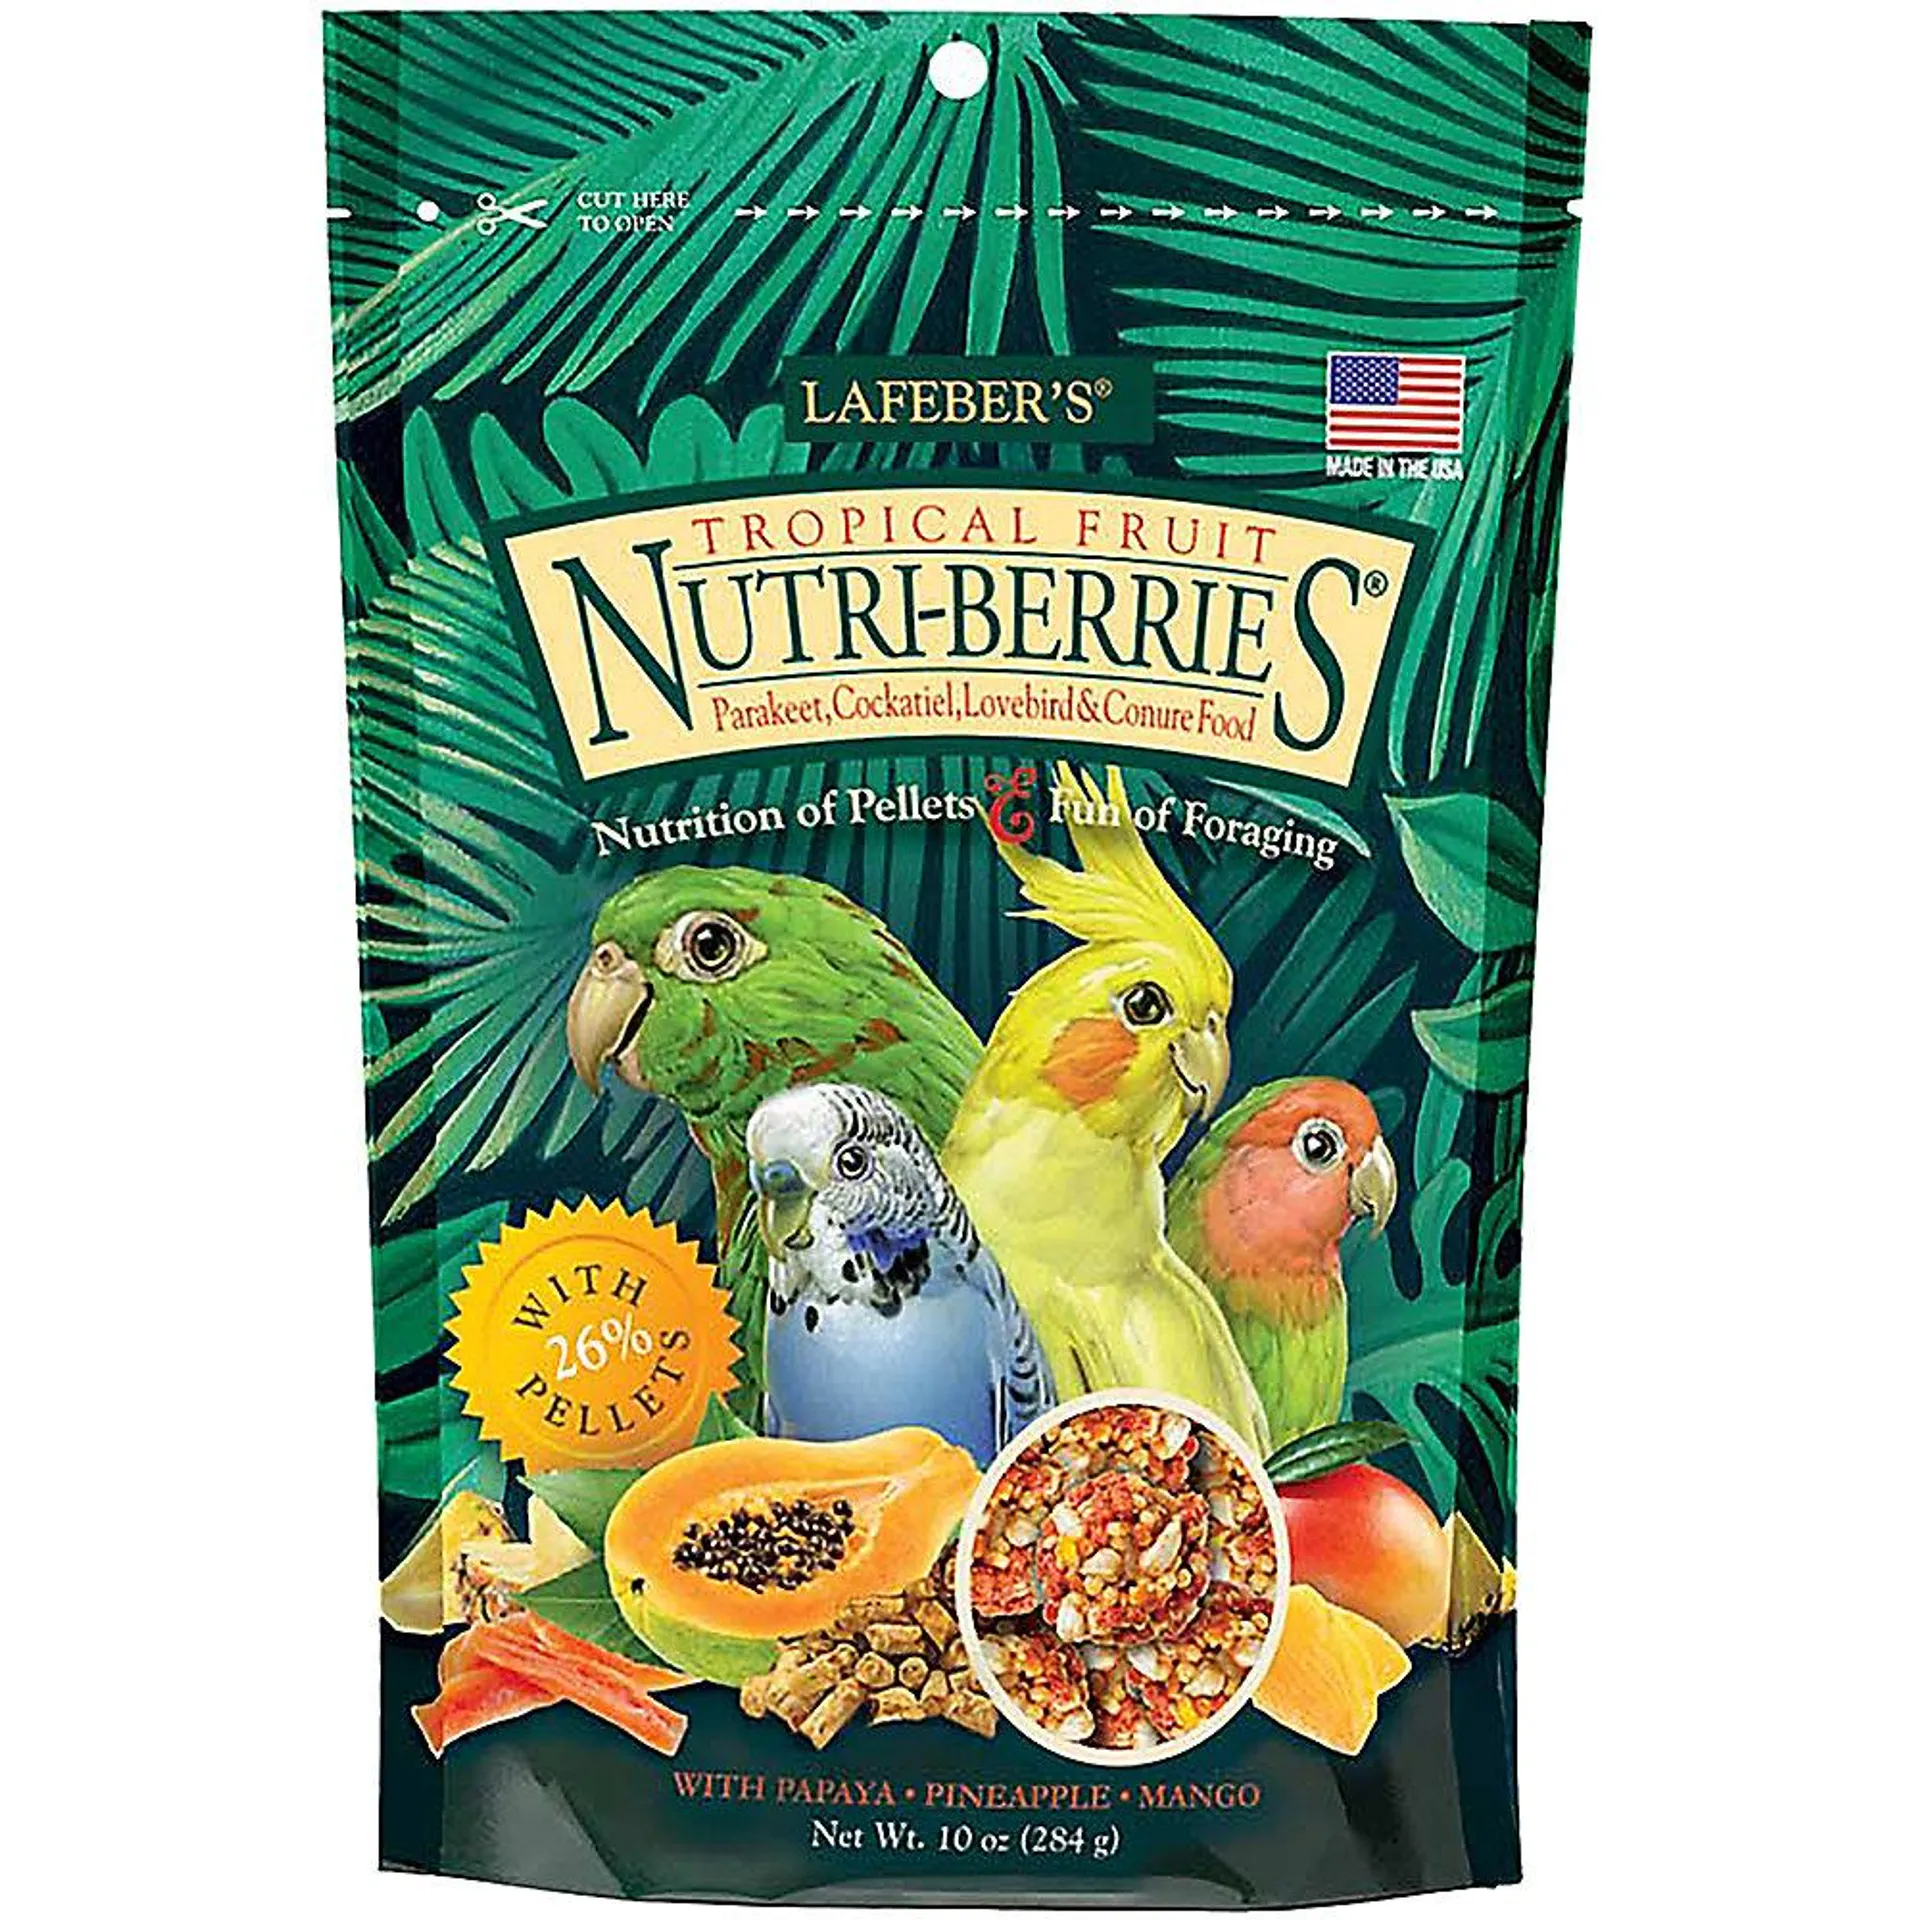 Lafeber's® Nutri-Berries Tropical Fruit Parakeet & Cockatiel Food